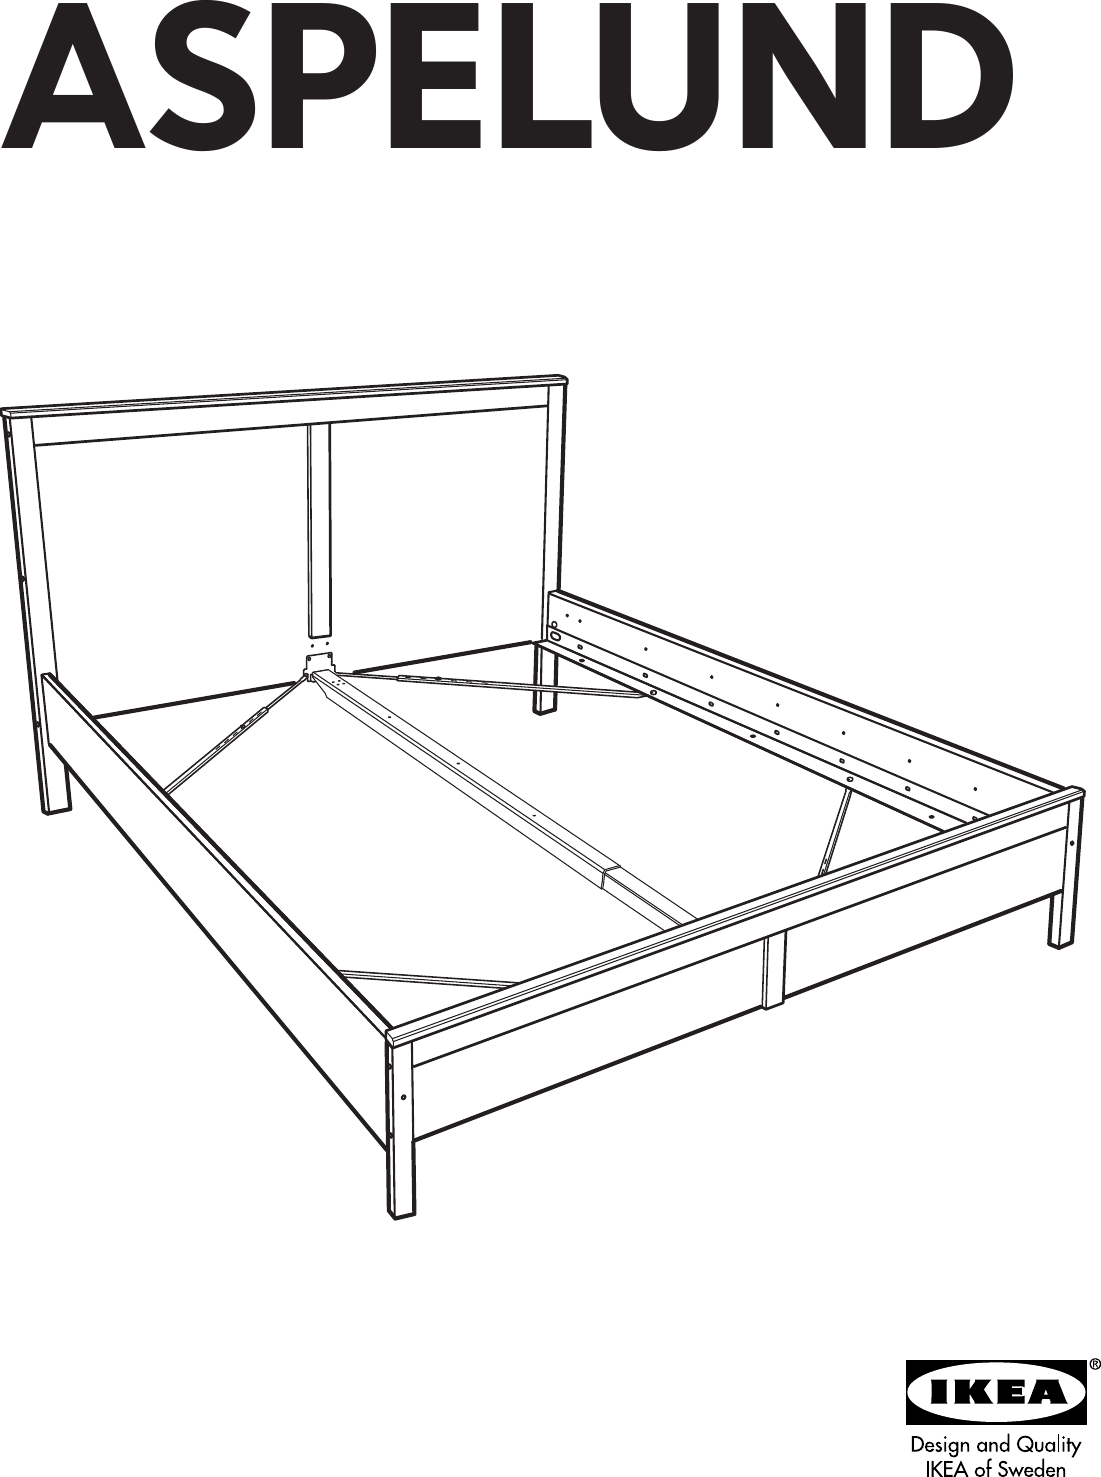 Кровать икеа сонгесанд инструкция по сборке - Самые разные инструкции ...